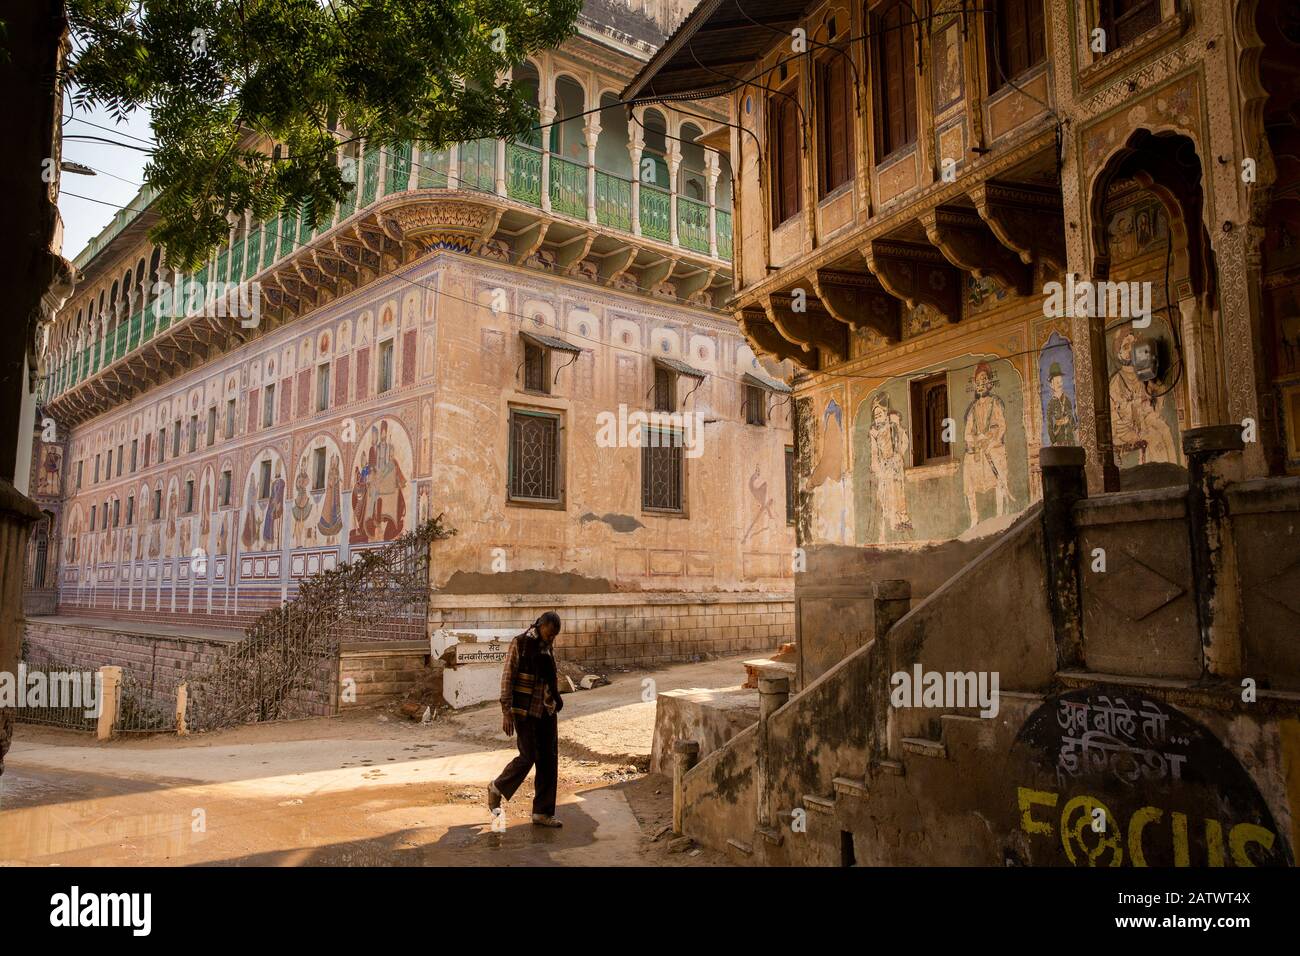 India, Rajasthan, Shekhawati, Dundlod, man walking between old painted Havelis Stock Photo